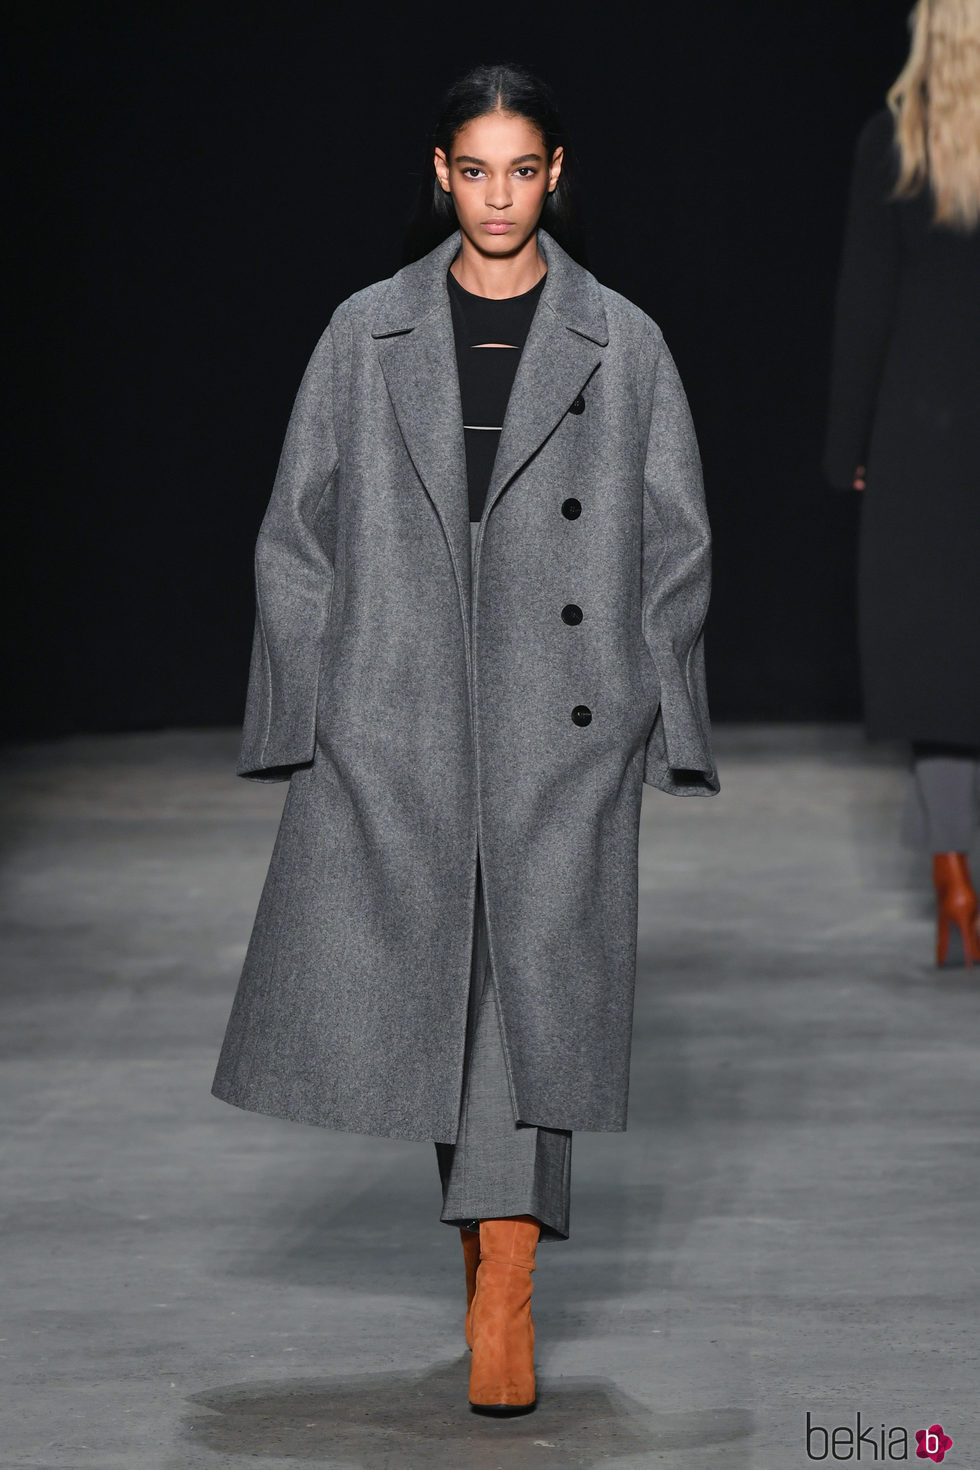 Abrigo gris oversize de Narciso Rodriguez otoño/invierno 2017/2018 en la New York Fashion Week